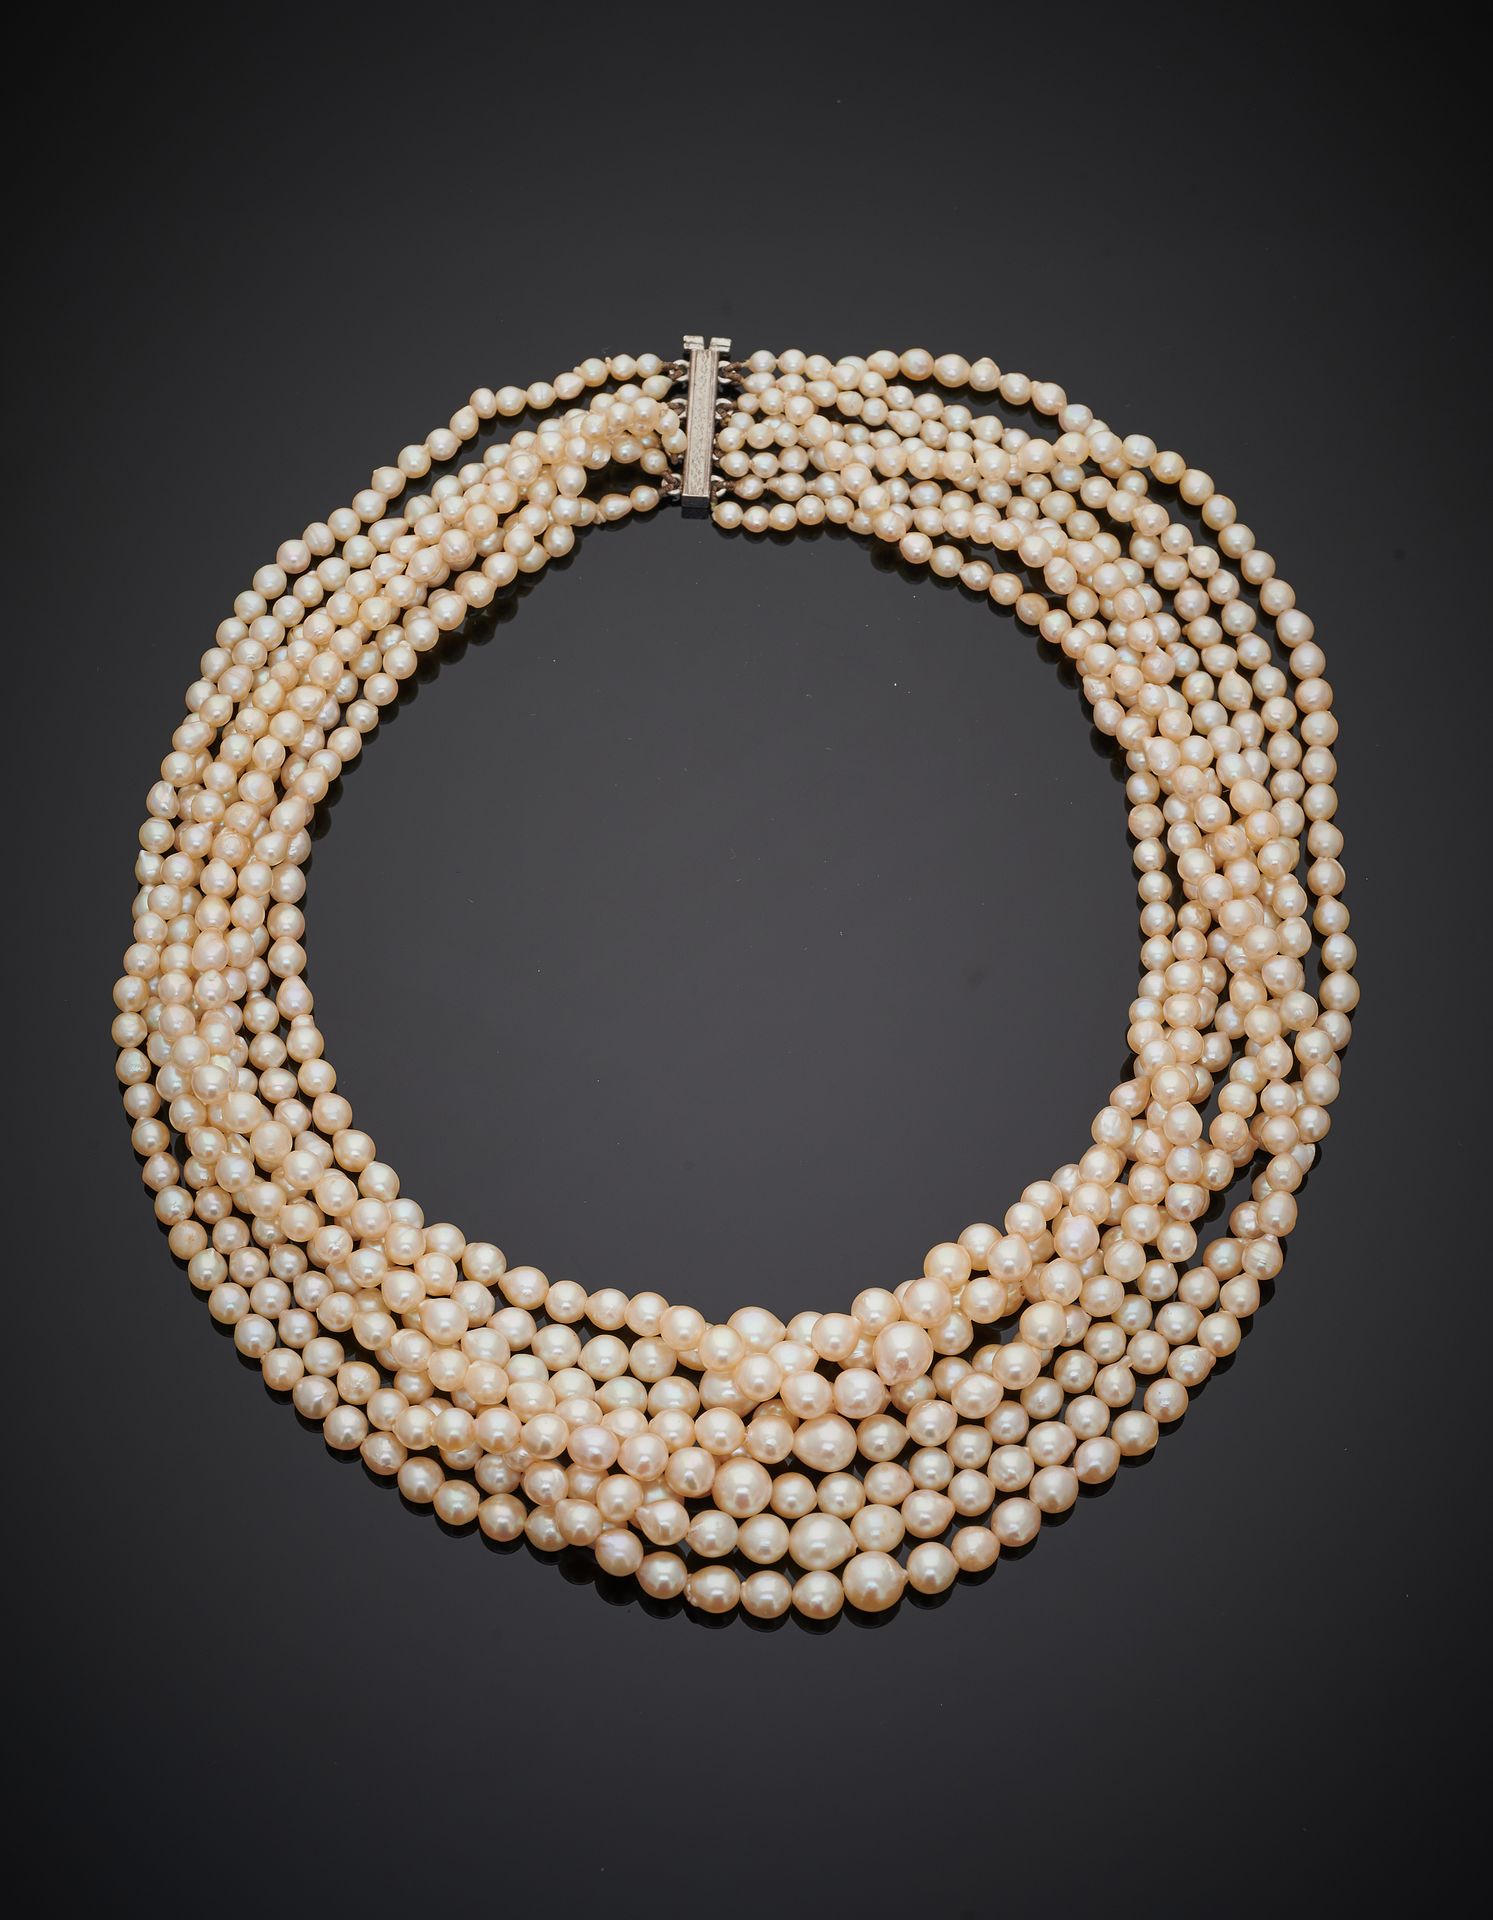 Null 由八串巴洛克风格的淡水养殖珍珠组成的 "帷幕 "项链，呈滴状。银扣（800‰）。 
珍珠直径：3至7.1毫米，长度：41.5厘米。